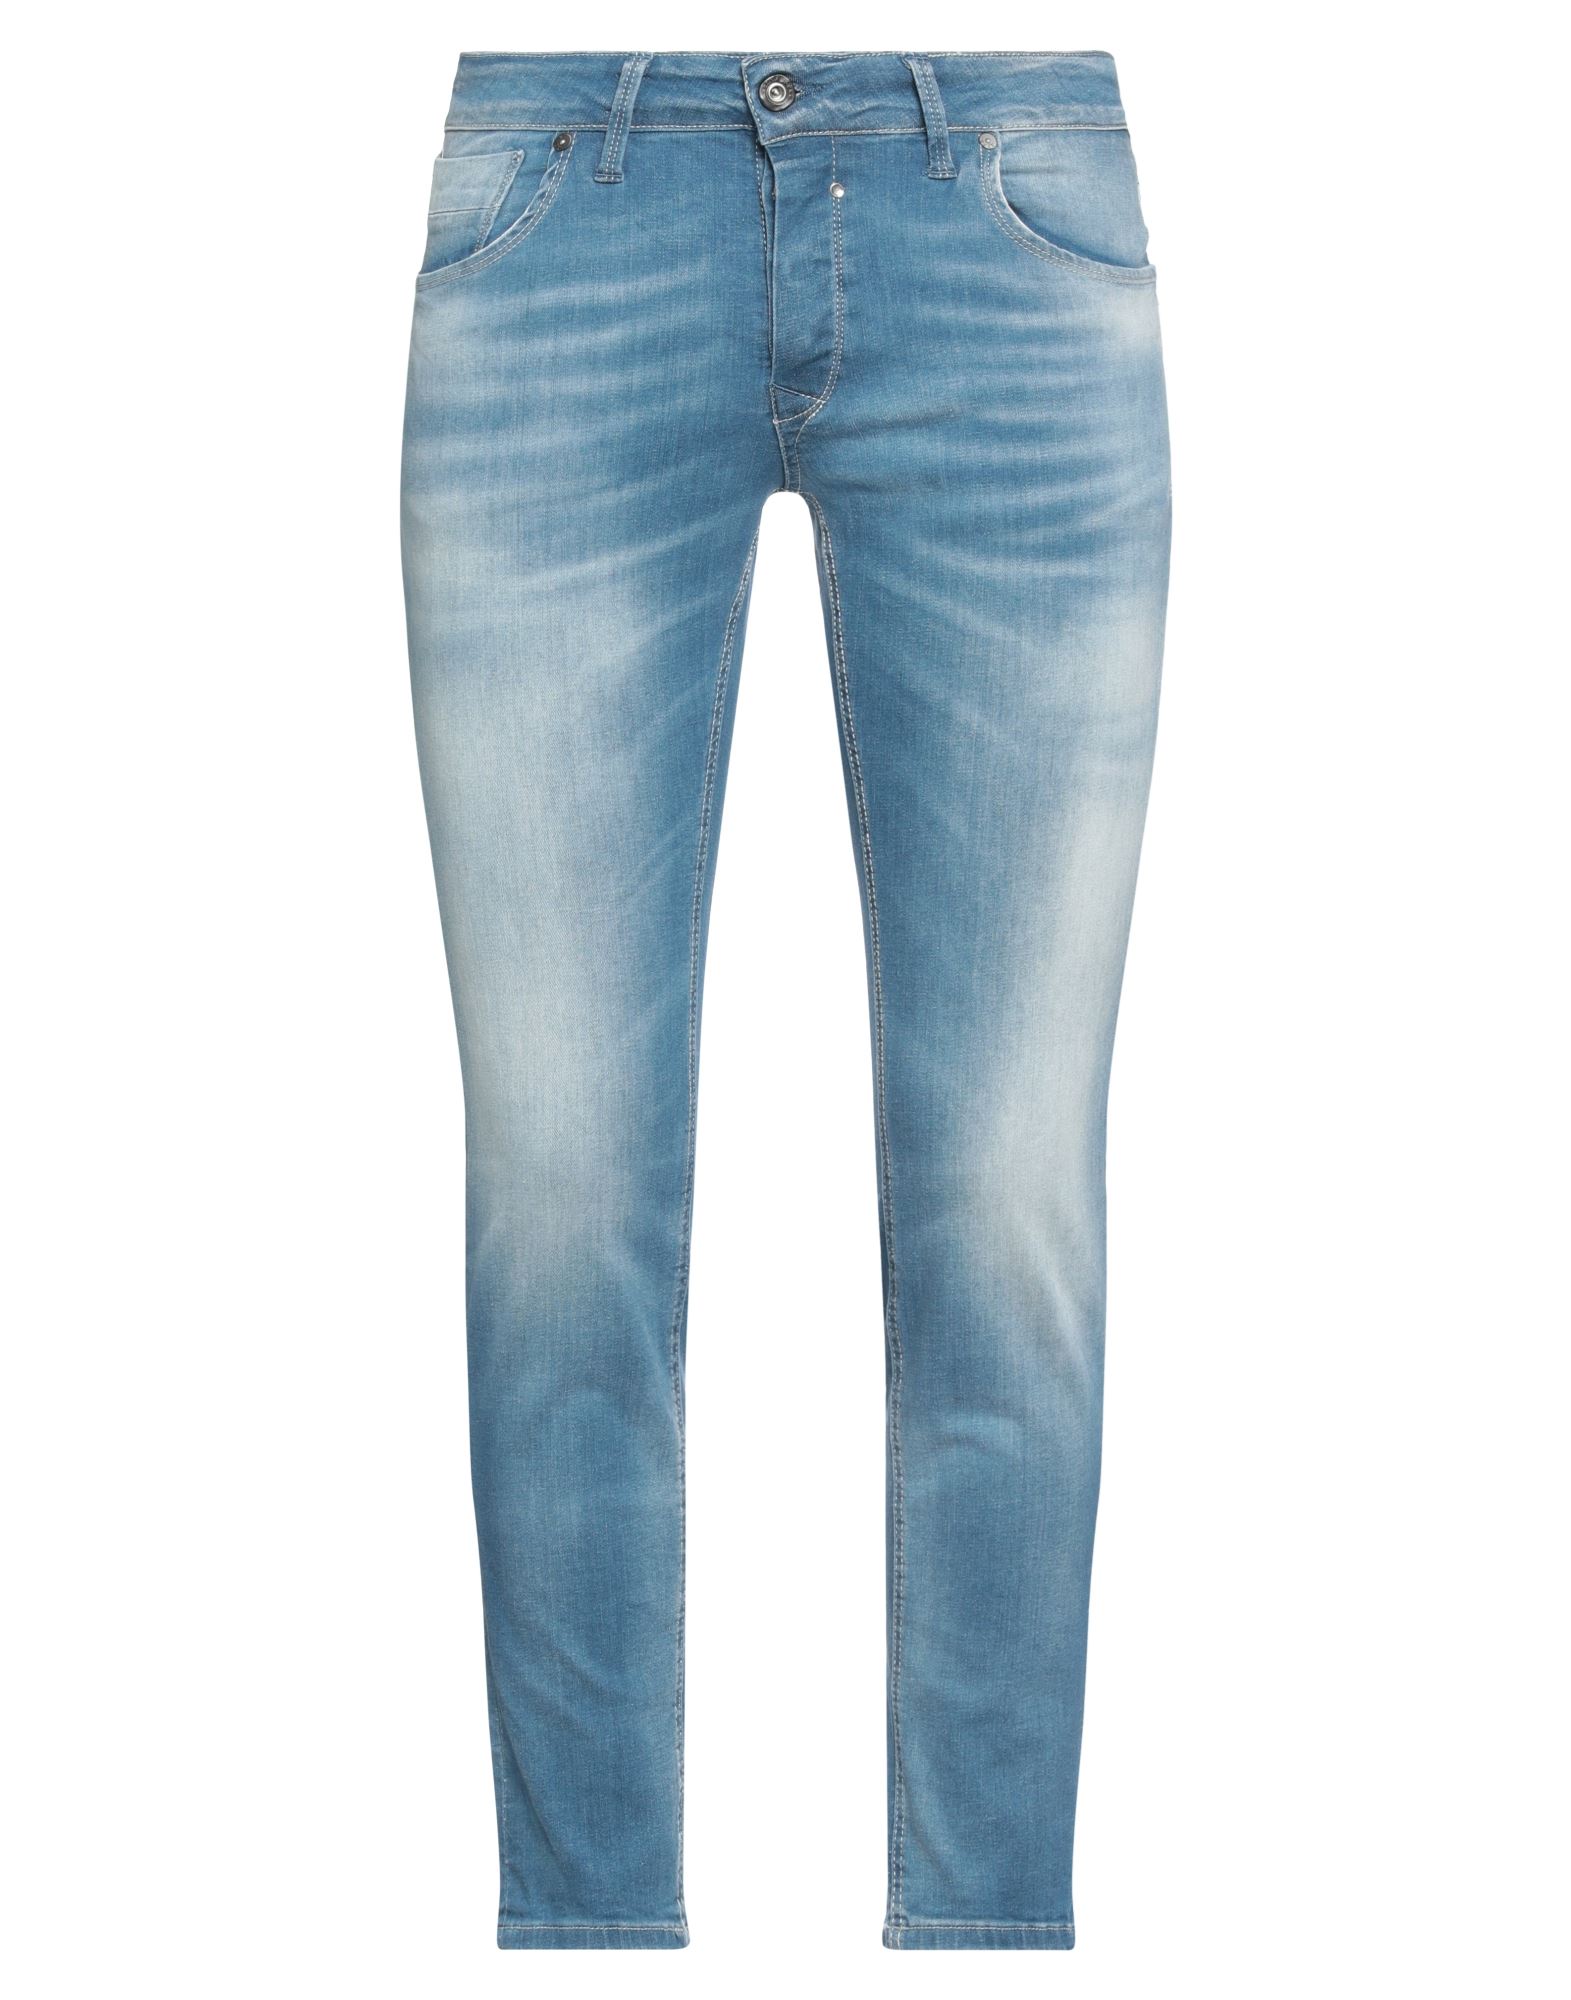 Jack & Jones Man Jeans Blue Size 33w-30l Cotton, Elastane